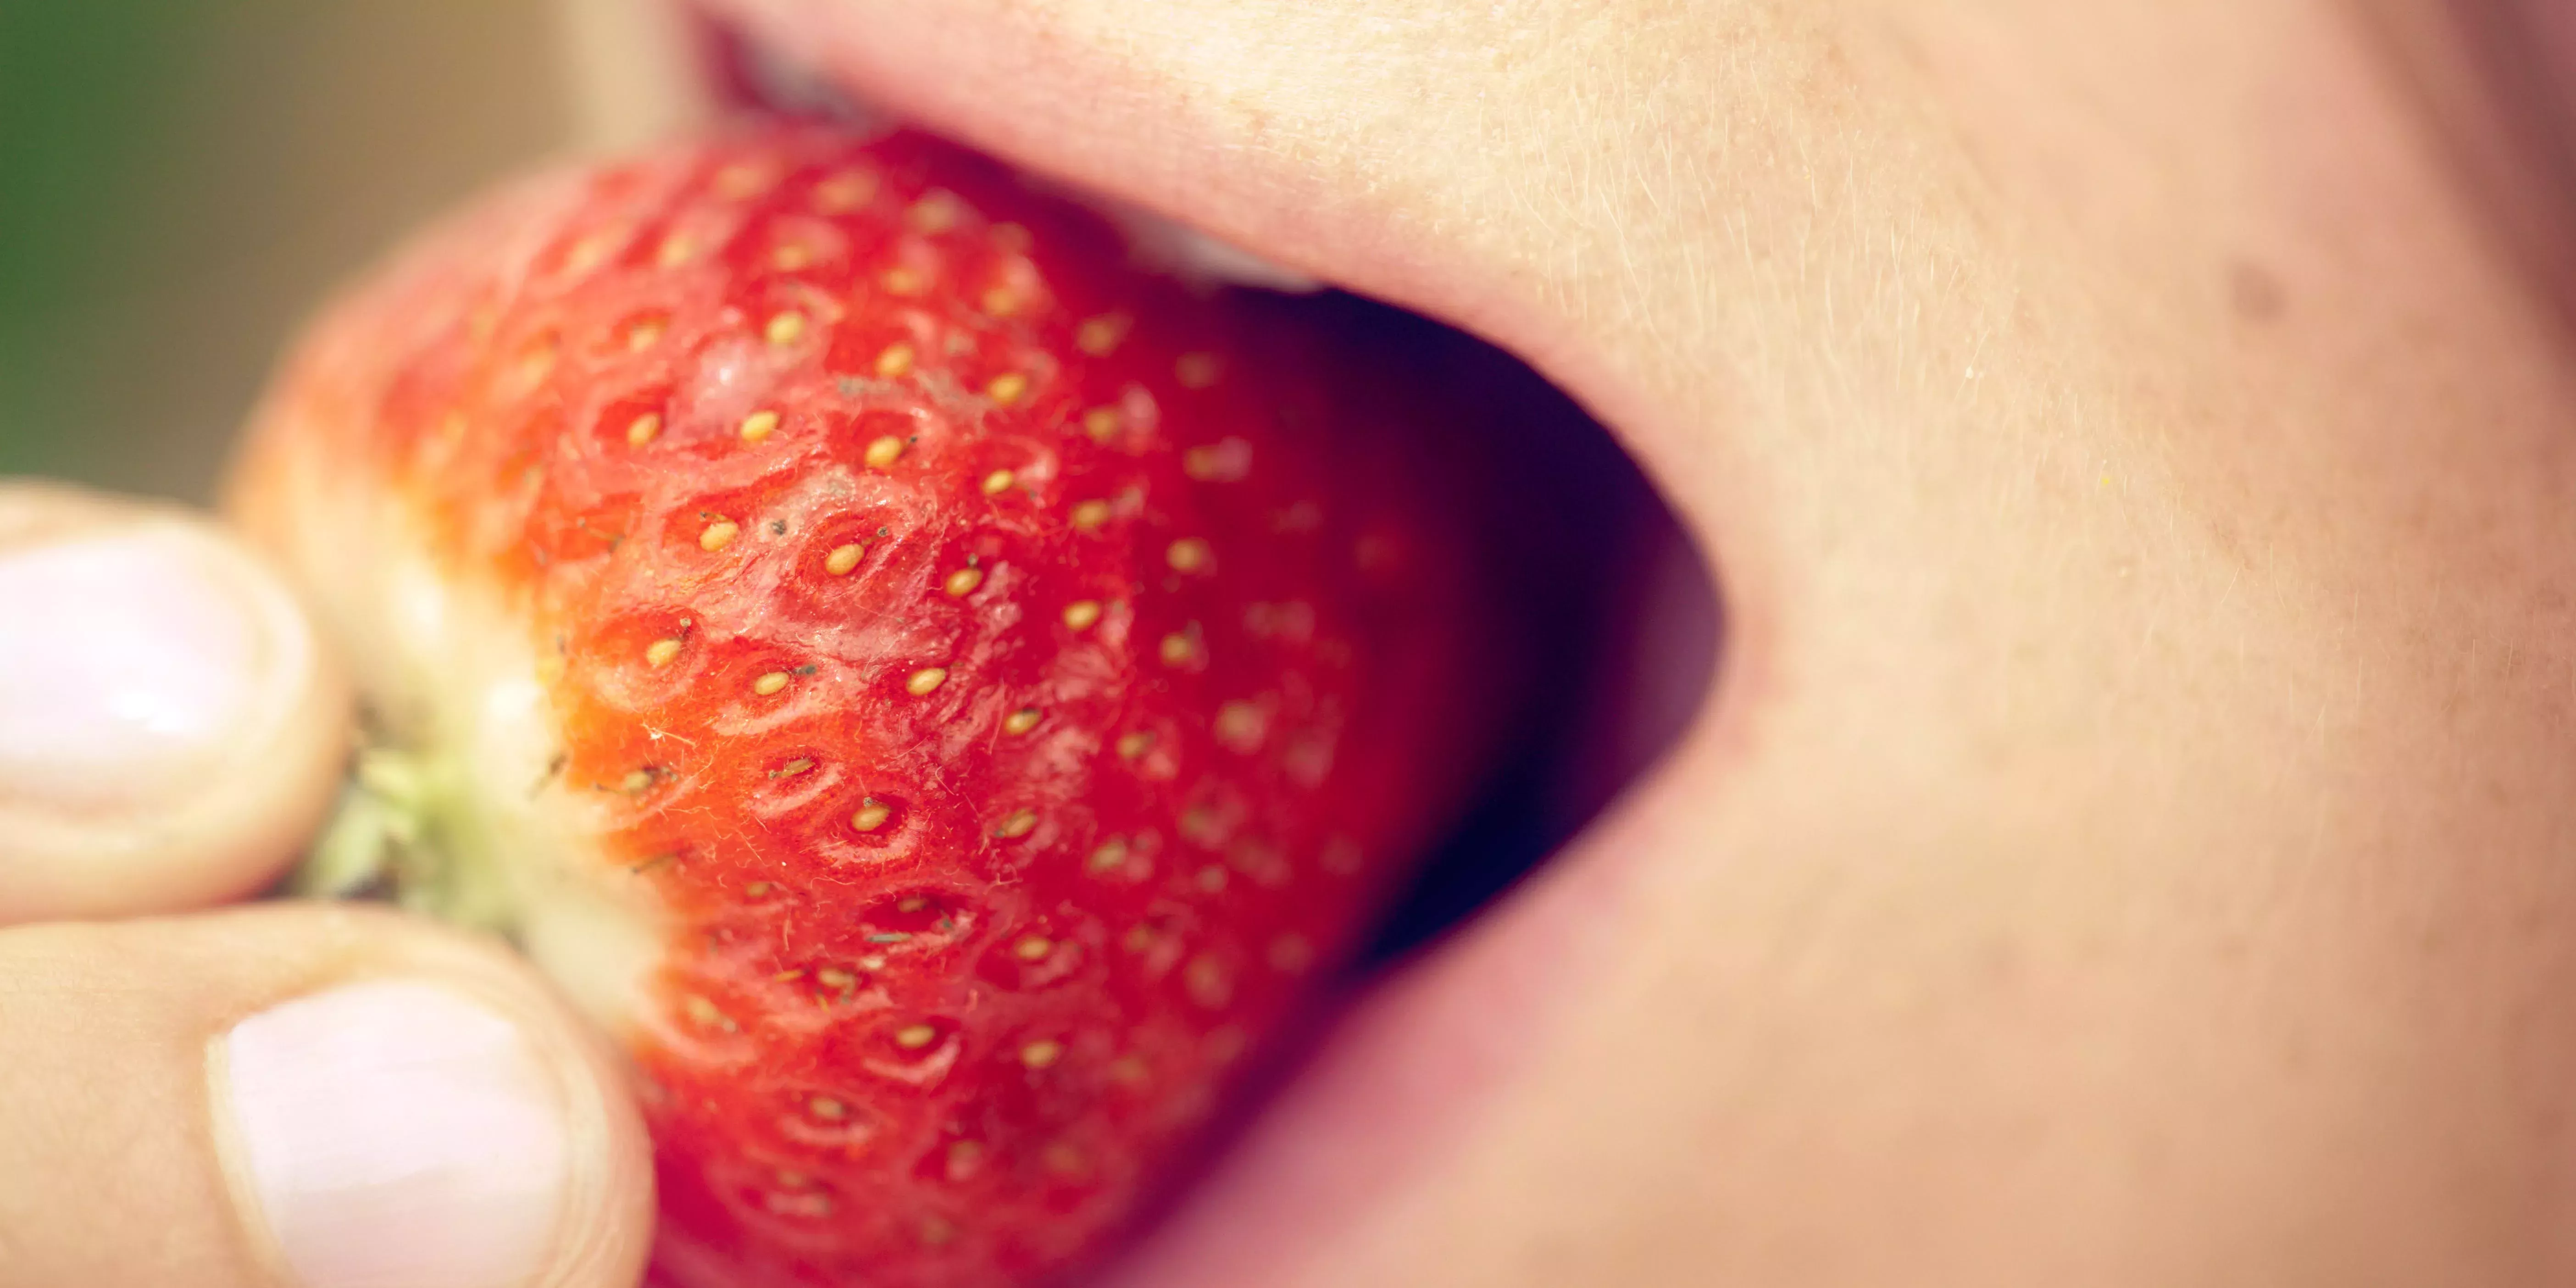 17 personas han enfermado tras comer fresas contaminadas con hepatitis A: estos son los síntomas a los que hay que prestar atención